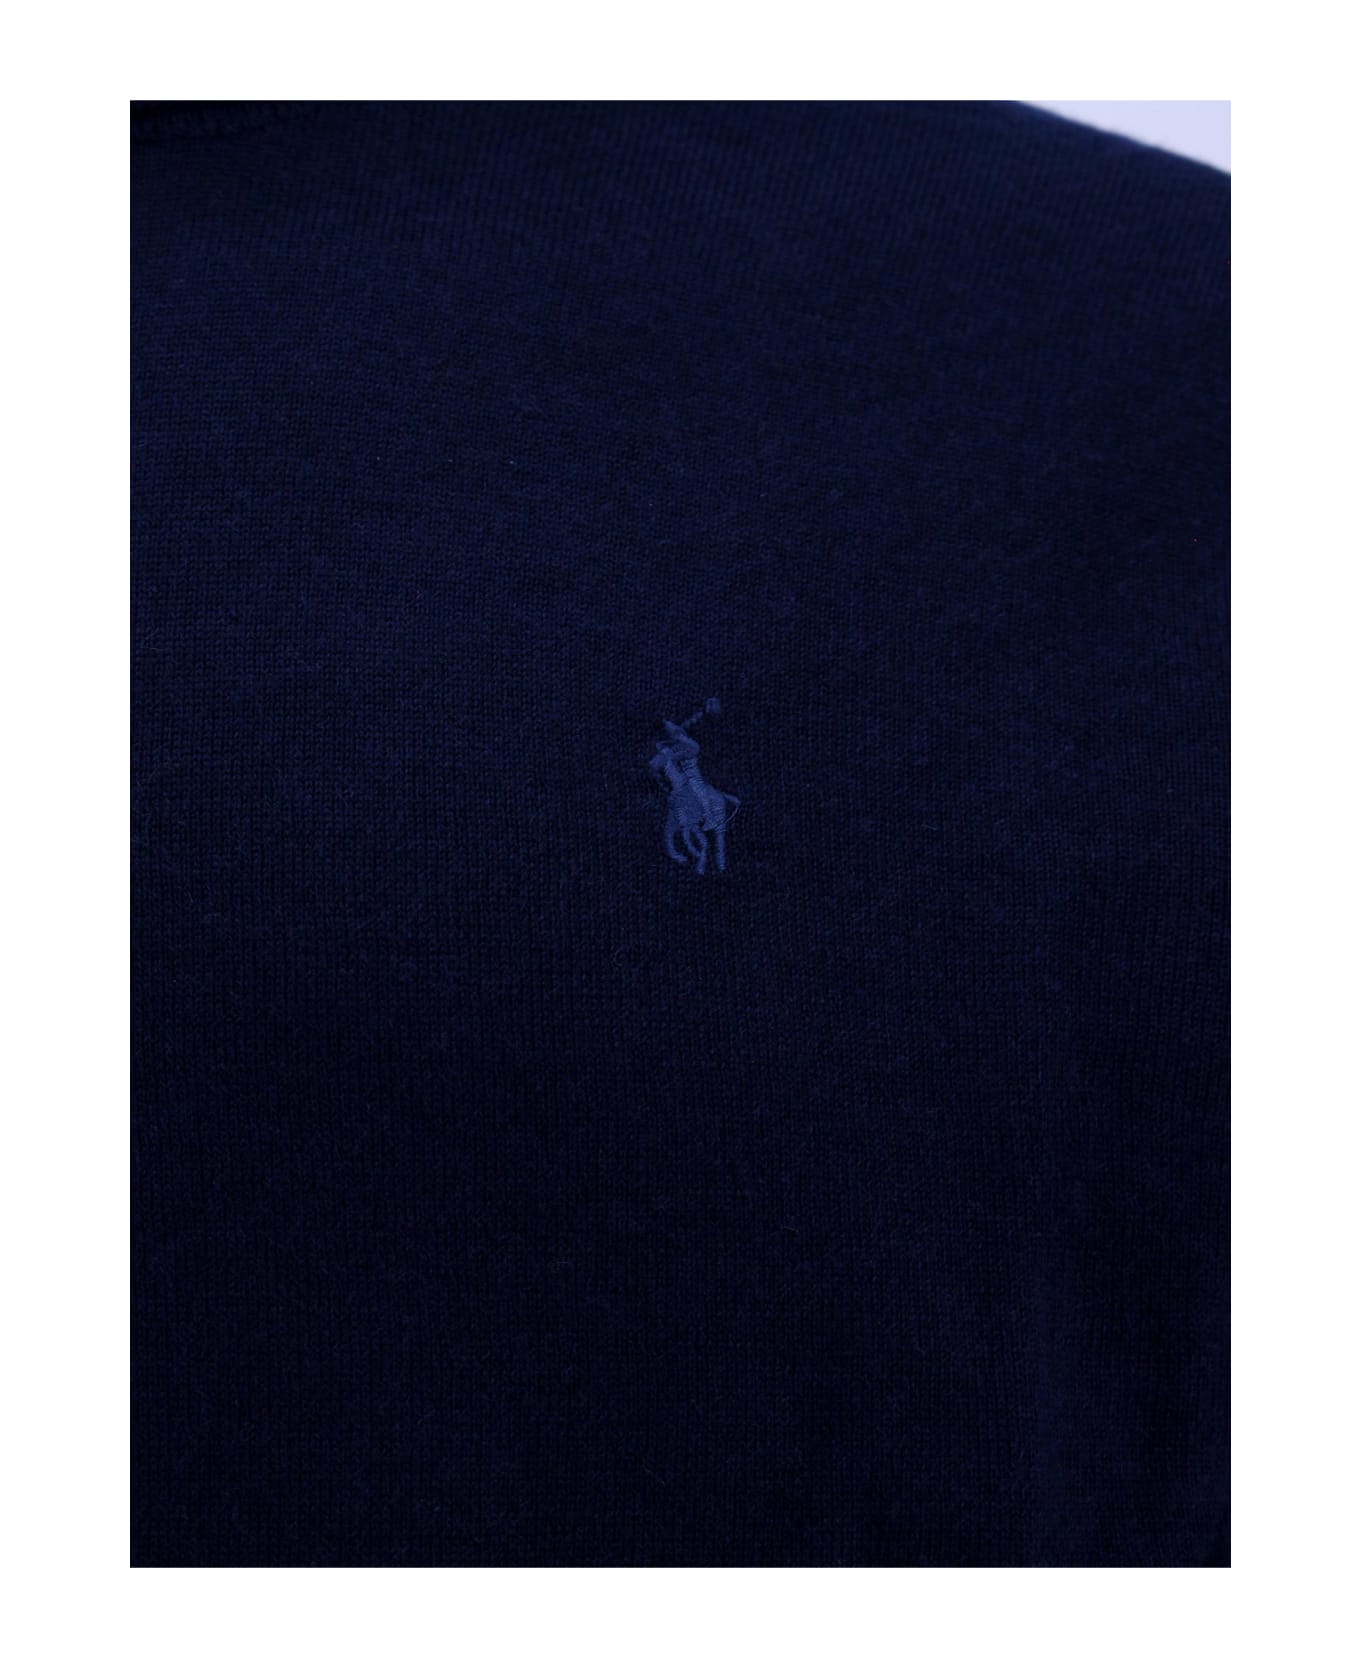 Polo Ralph Lauren Sweater - Blue ニットウェア